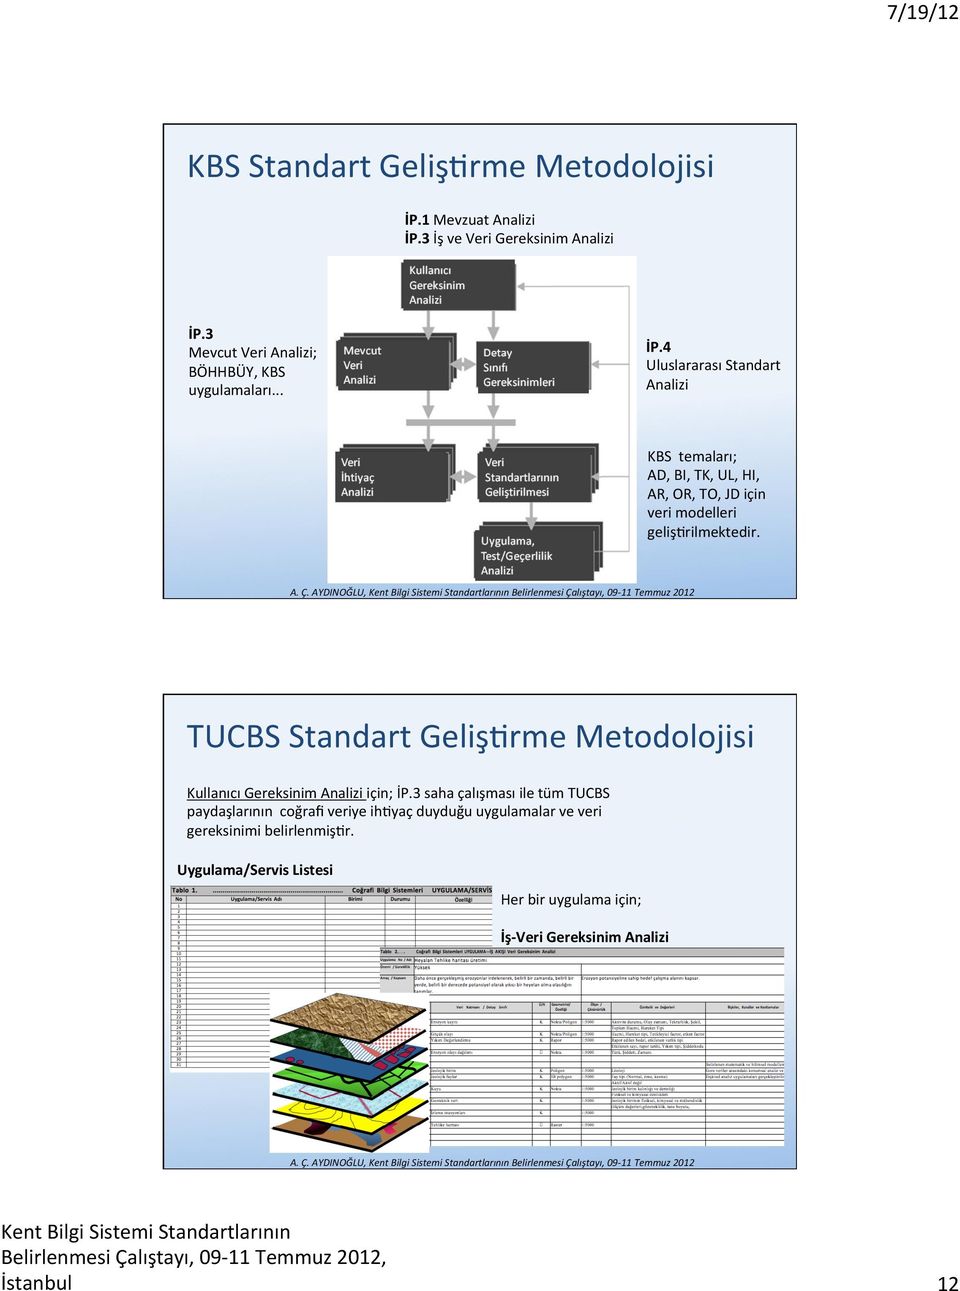 4 Uluslararası Standart Analizi KBS temaları; AD, BI, TK, UL, HI, AR, OR, TO, JD için veri modelleri gelişlrilmektedir.